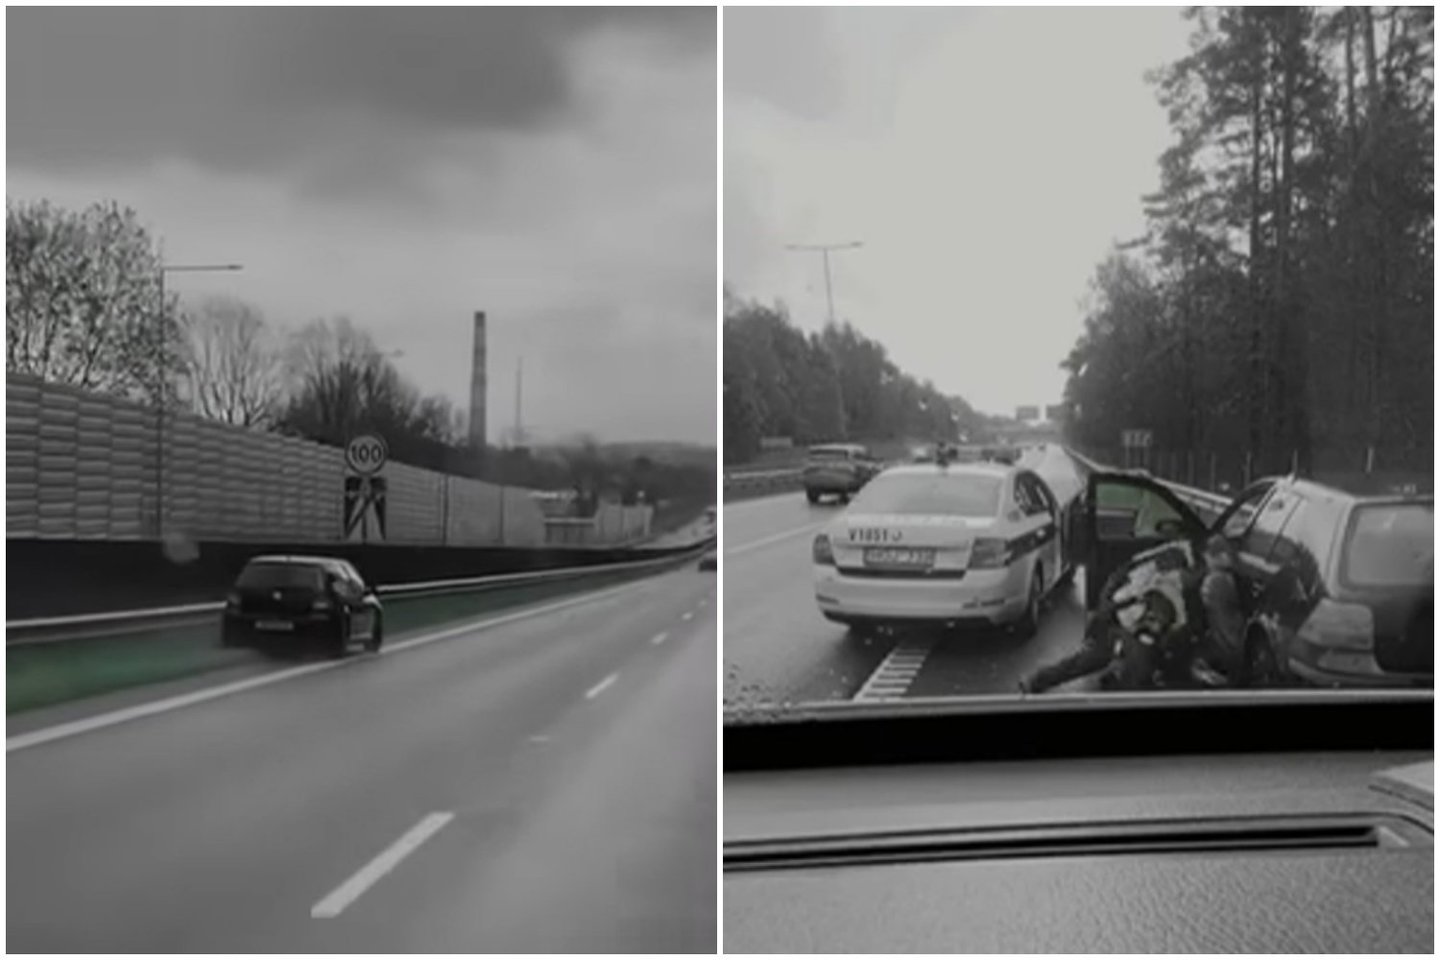  Vaikino kelionė link Vilniaus neliko nepastebėta – pavojingai manevruojantį vairuotoją sulaikė pareigūnai.<br> Facebook/Reidas TV/vaizdo įrašo STOP kadrai